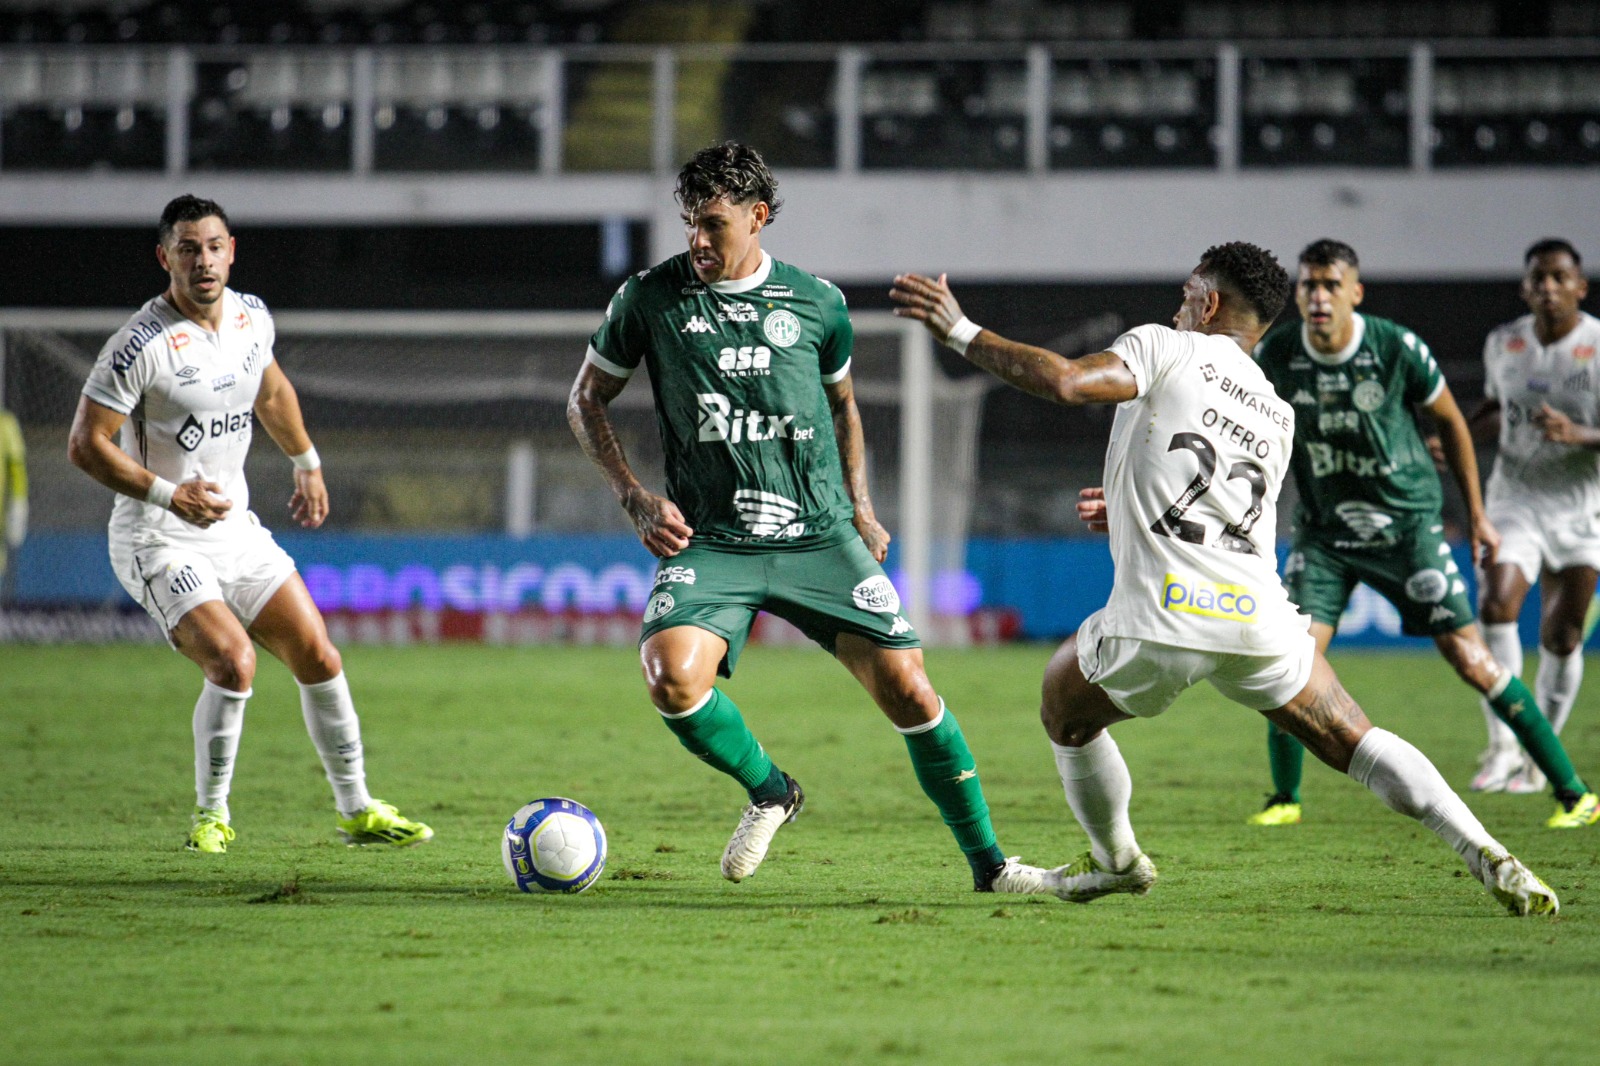 Júnior Rocha destaca esforço da equipe e promete mudança de postura para os próximos jogos e diz: “O Santos foi muito efetivo”